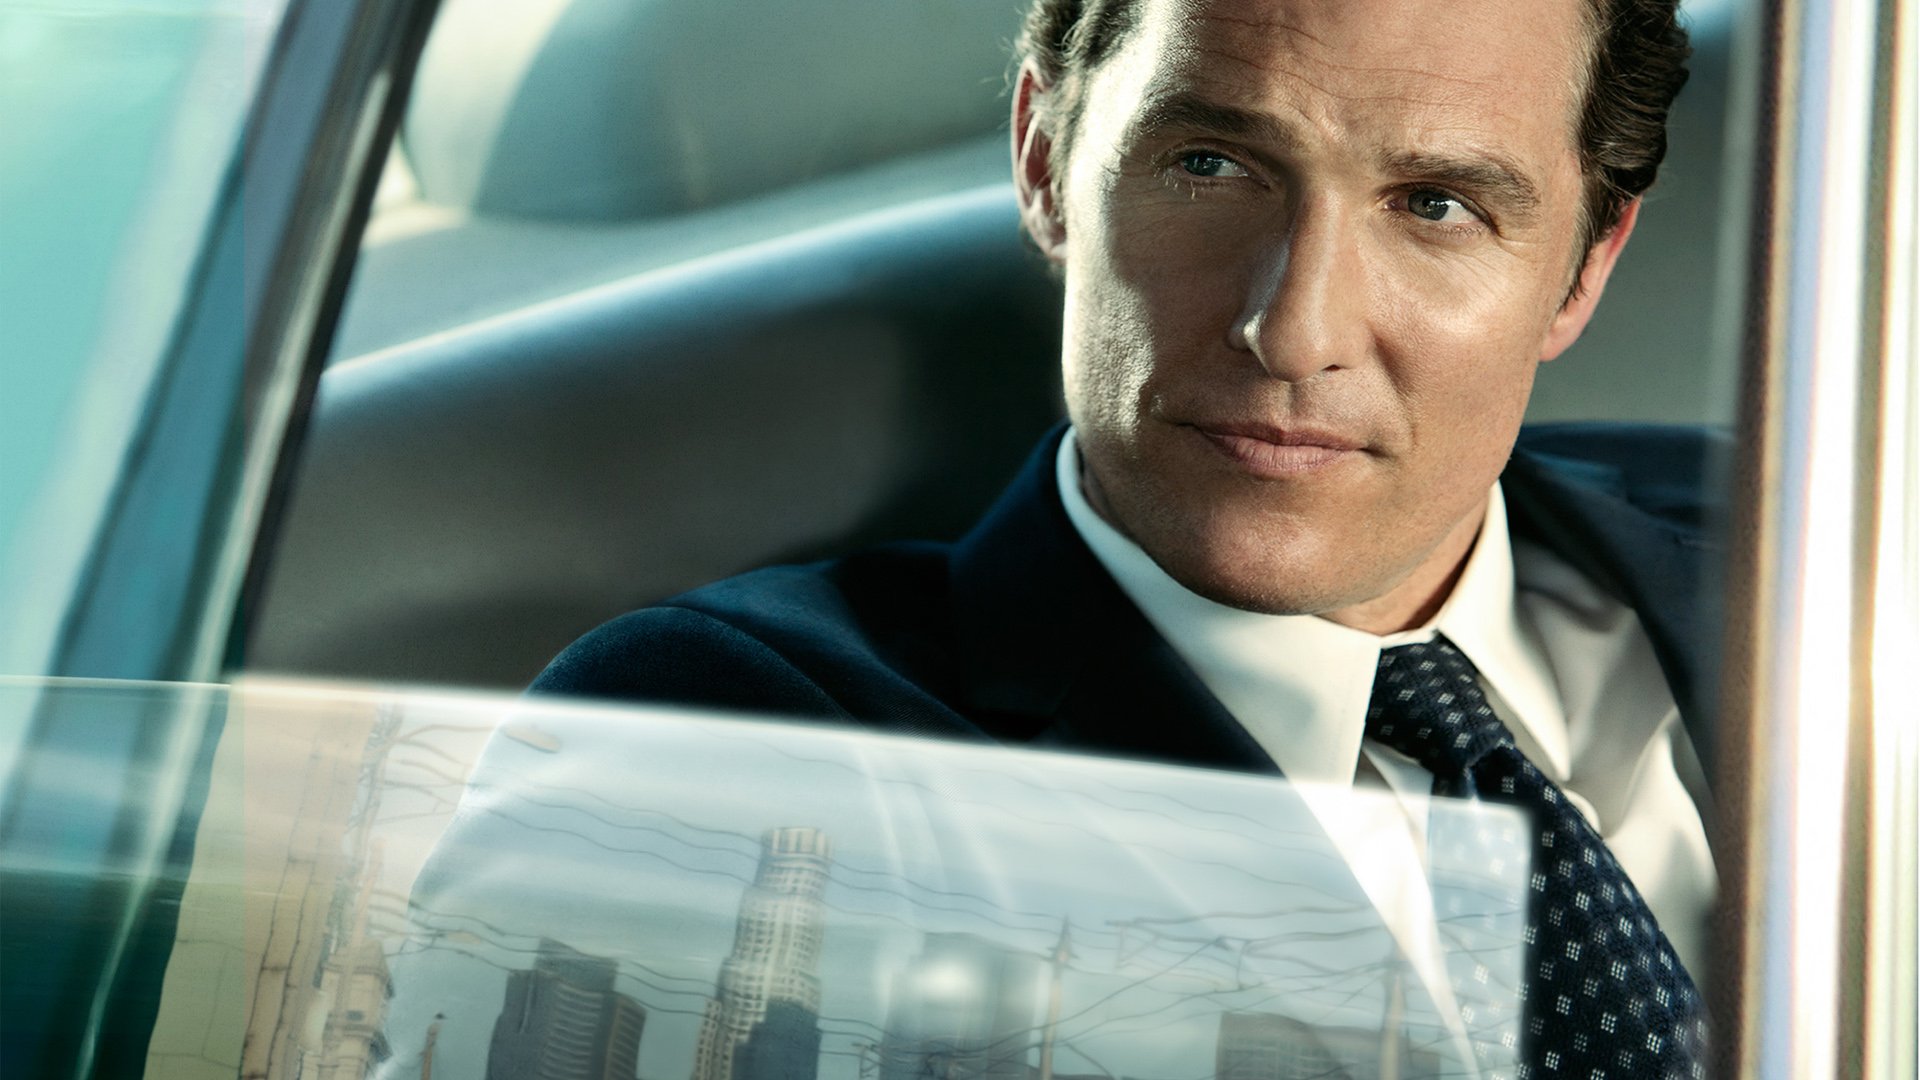 O Poder e a Lei, filme com Matthew McConaughey, vai virar série de TV